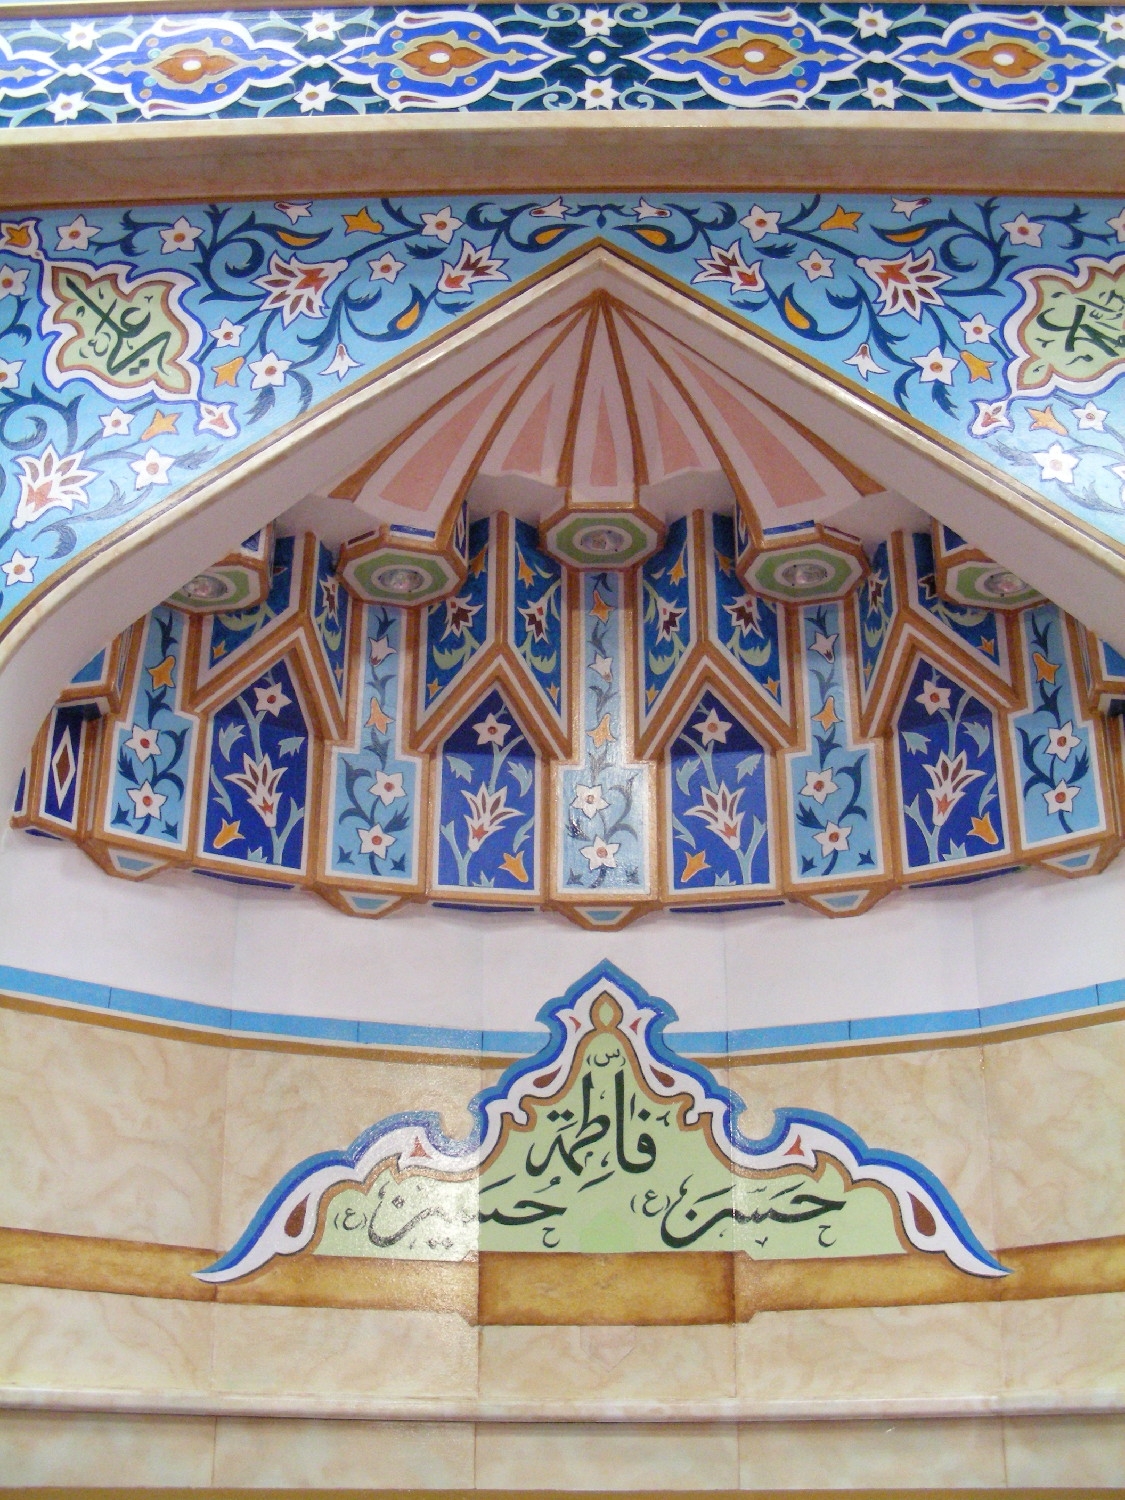 Mihrab, tile and muqarnas detail at top